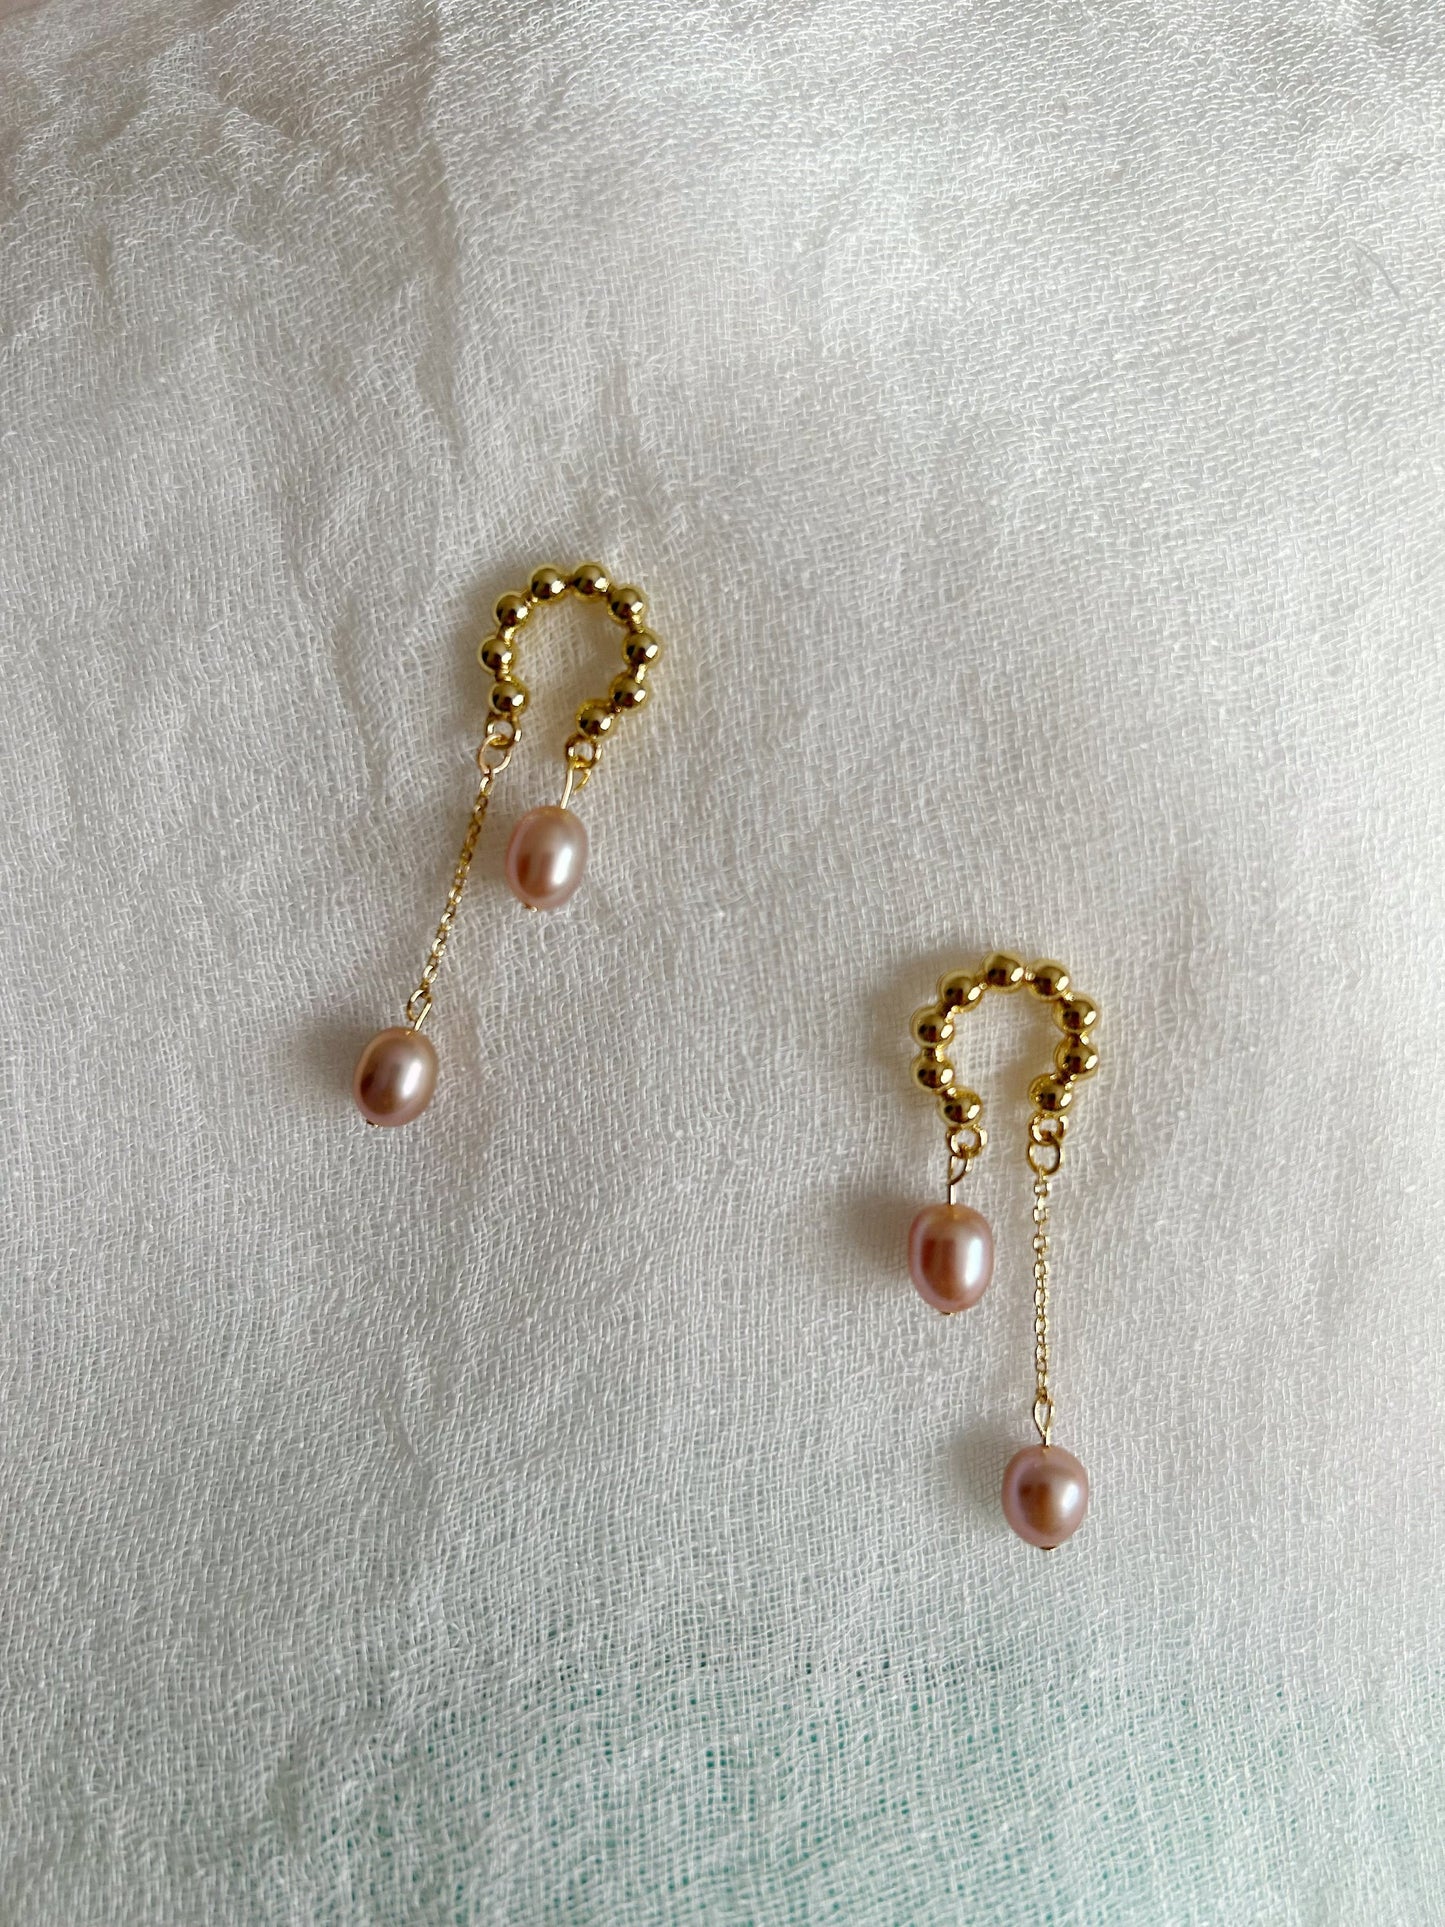 Pink pearl ear drop, freshwater pearl earrings, high luster pink pearls